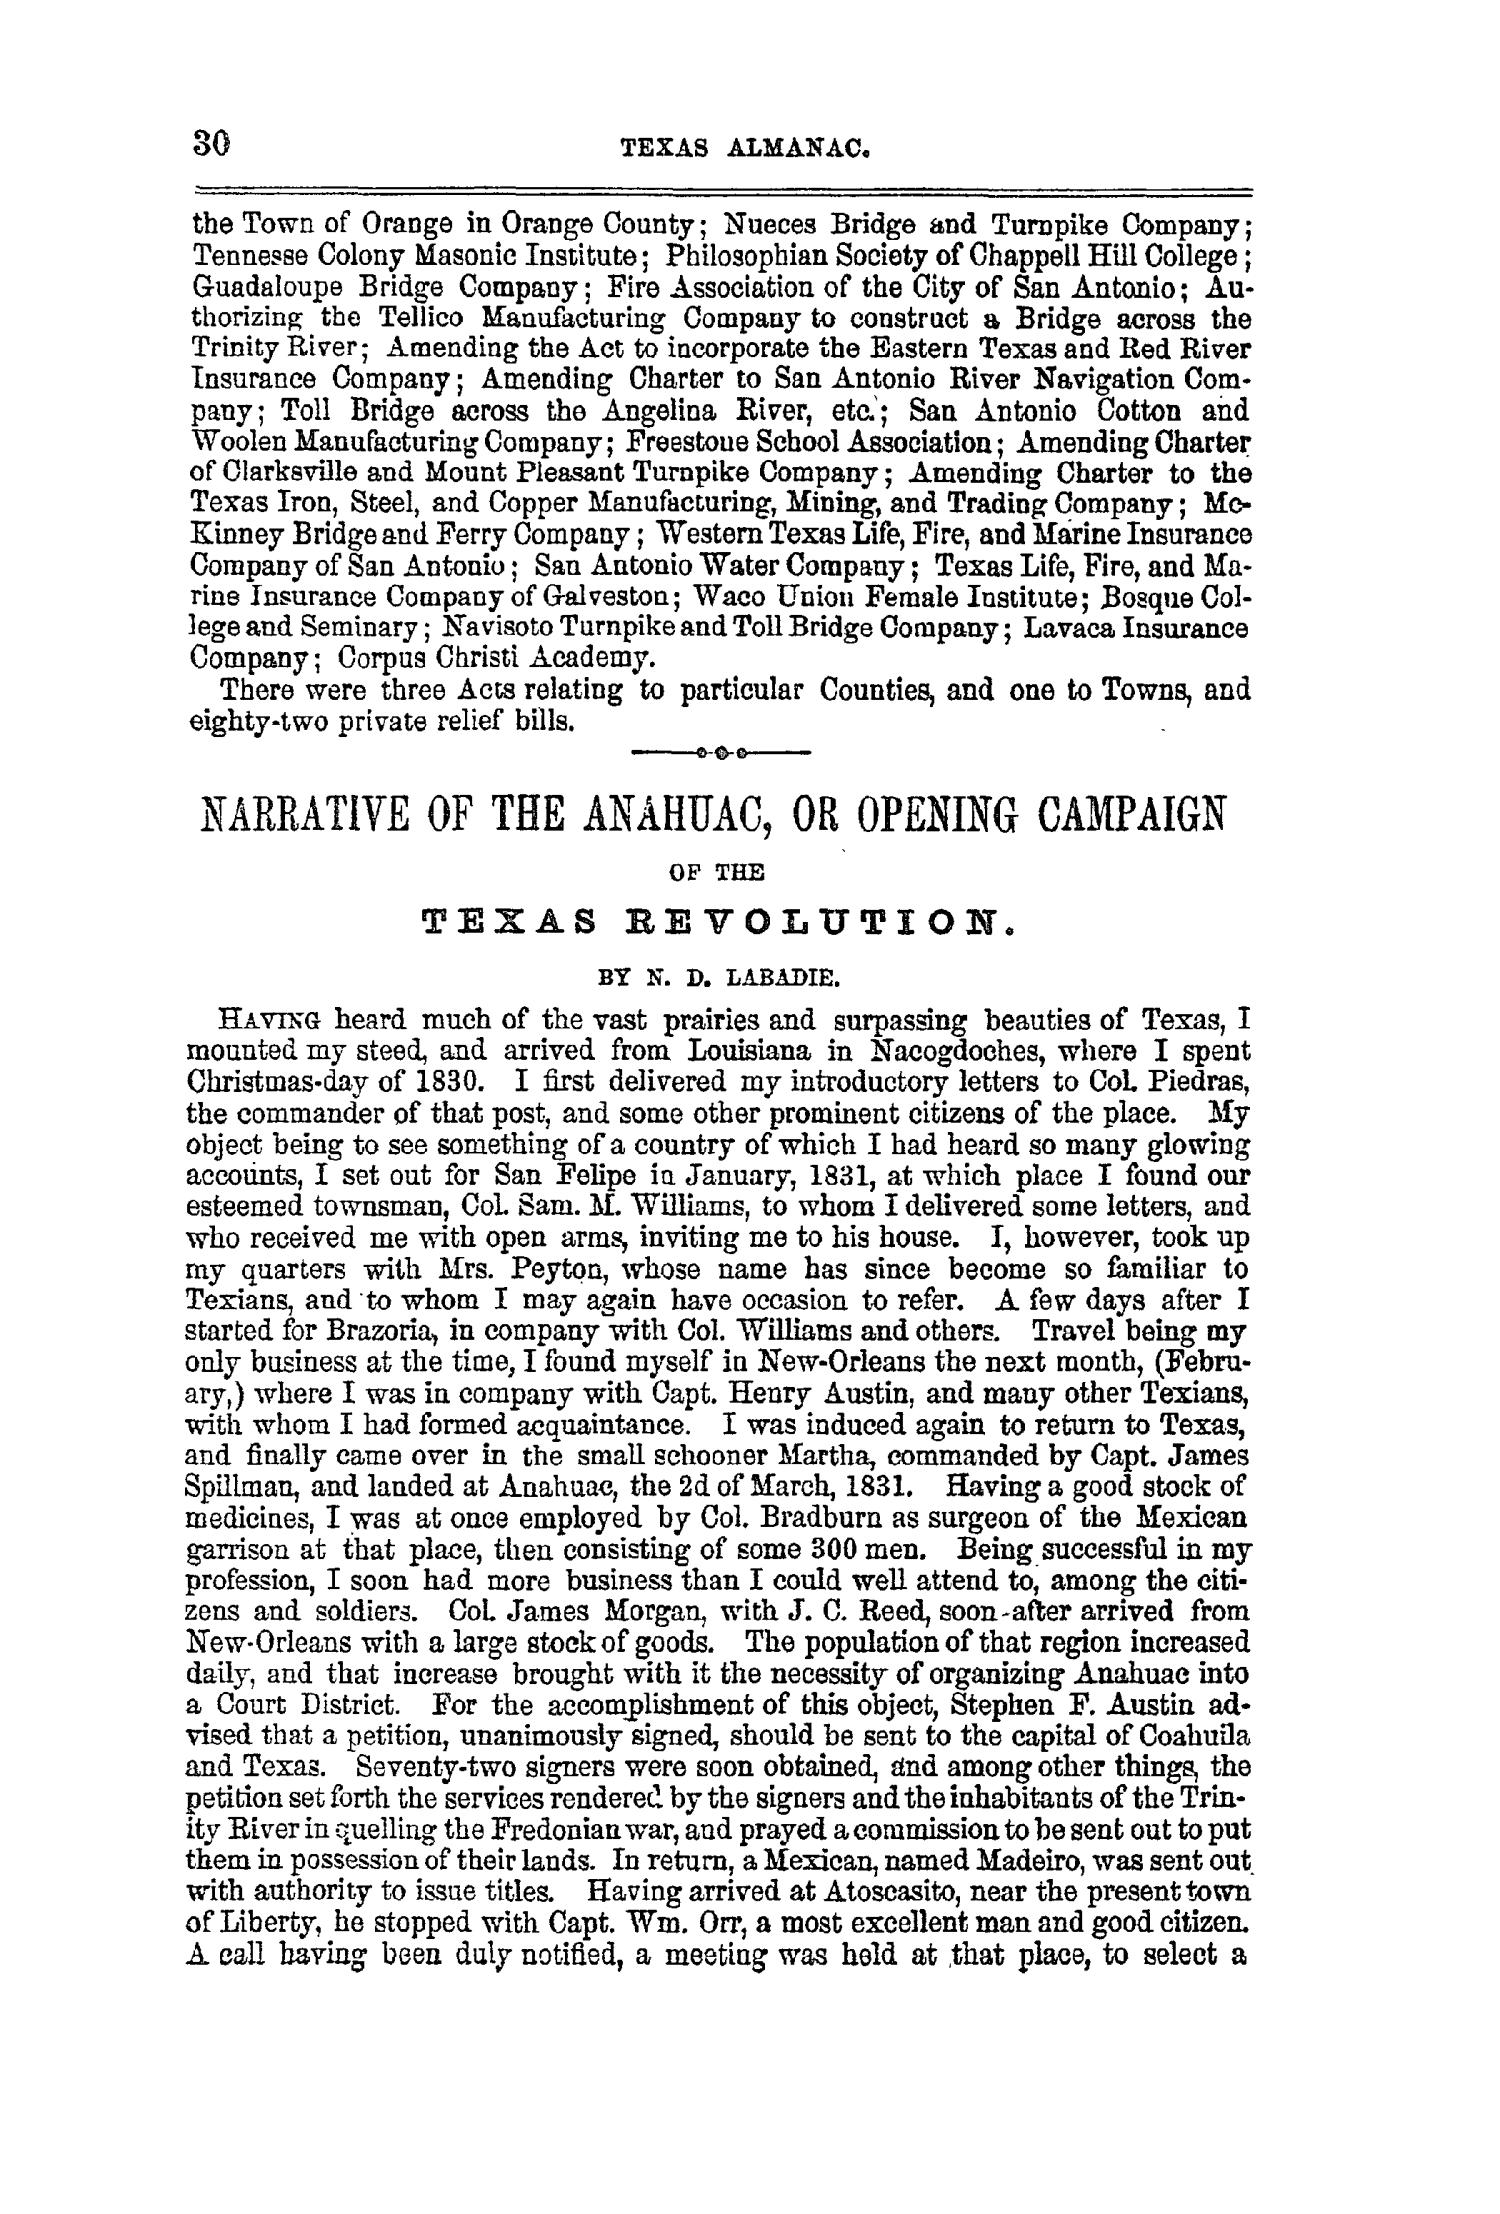 Texas Almanac, 1859
                                                
                                                    30
                                                